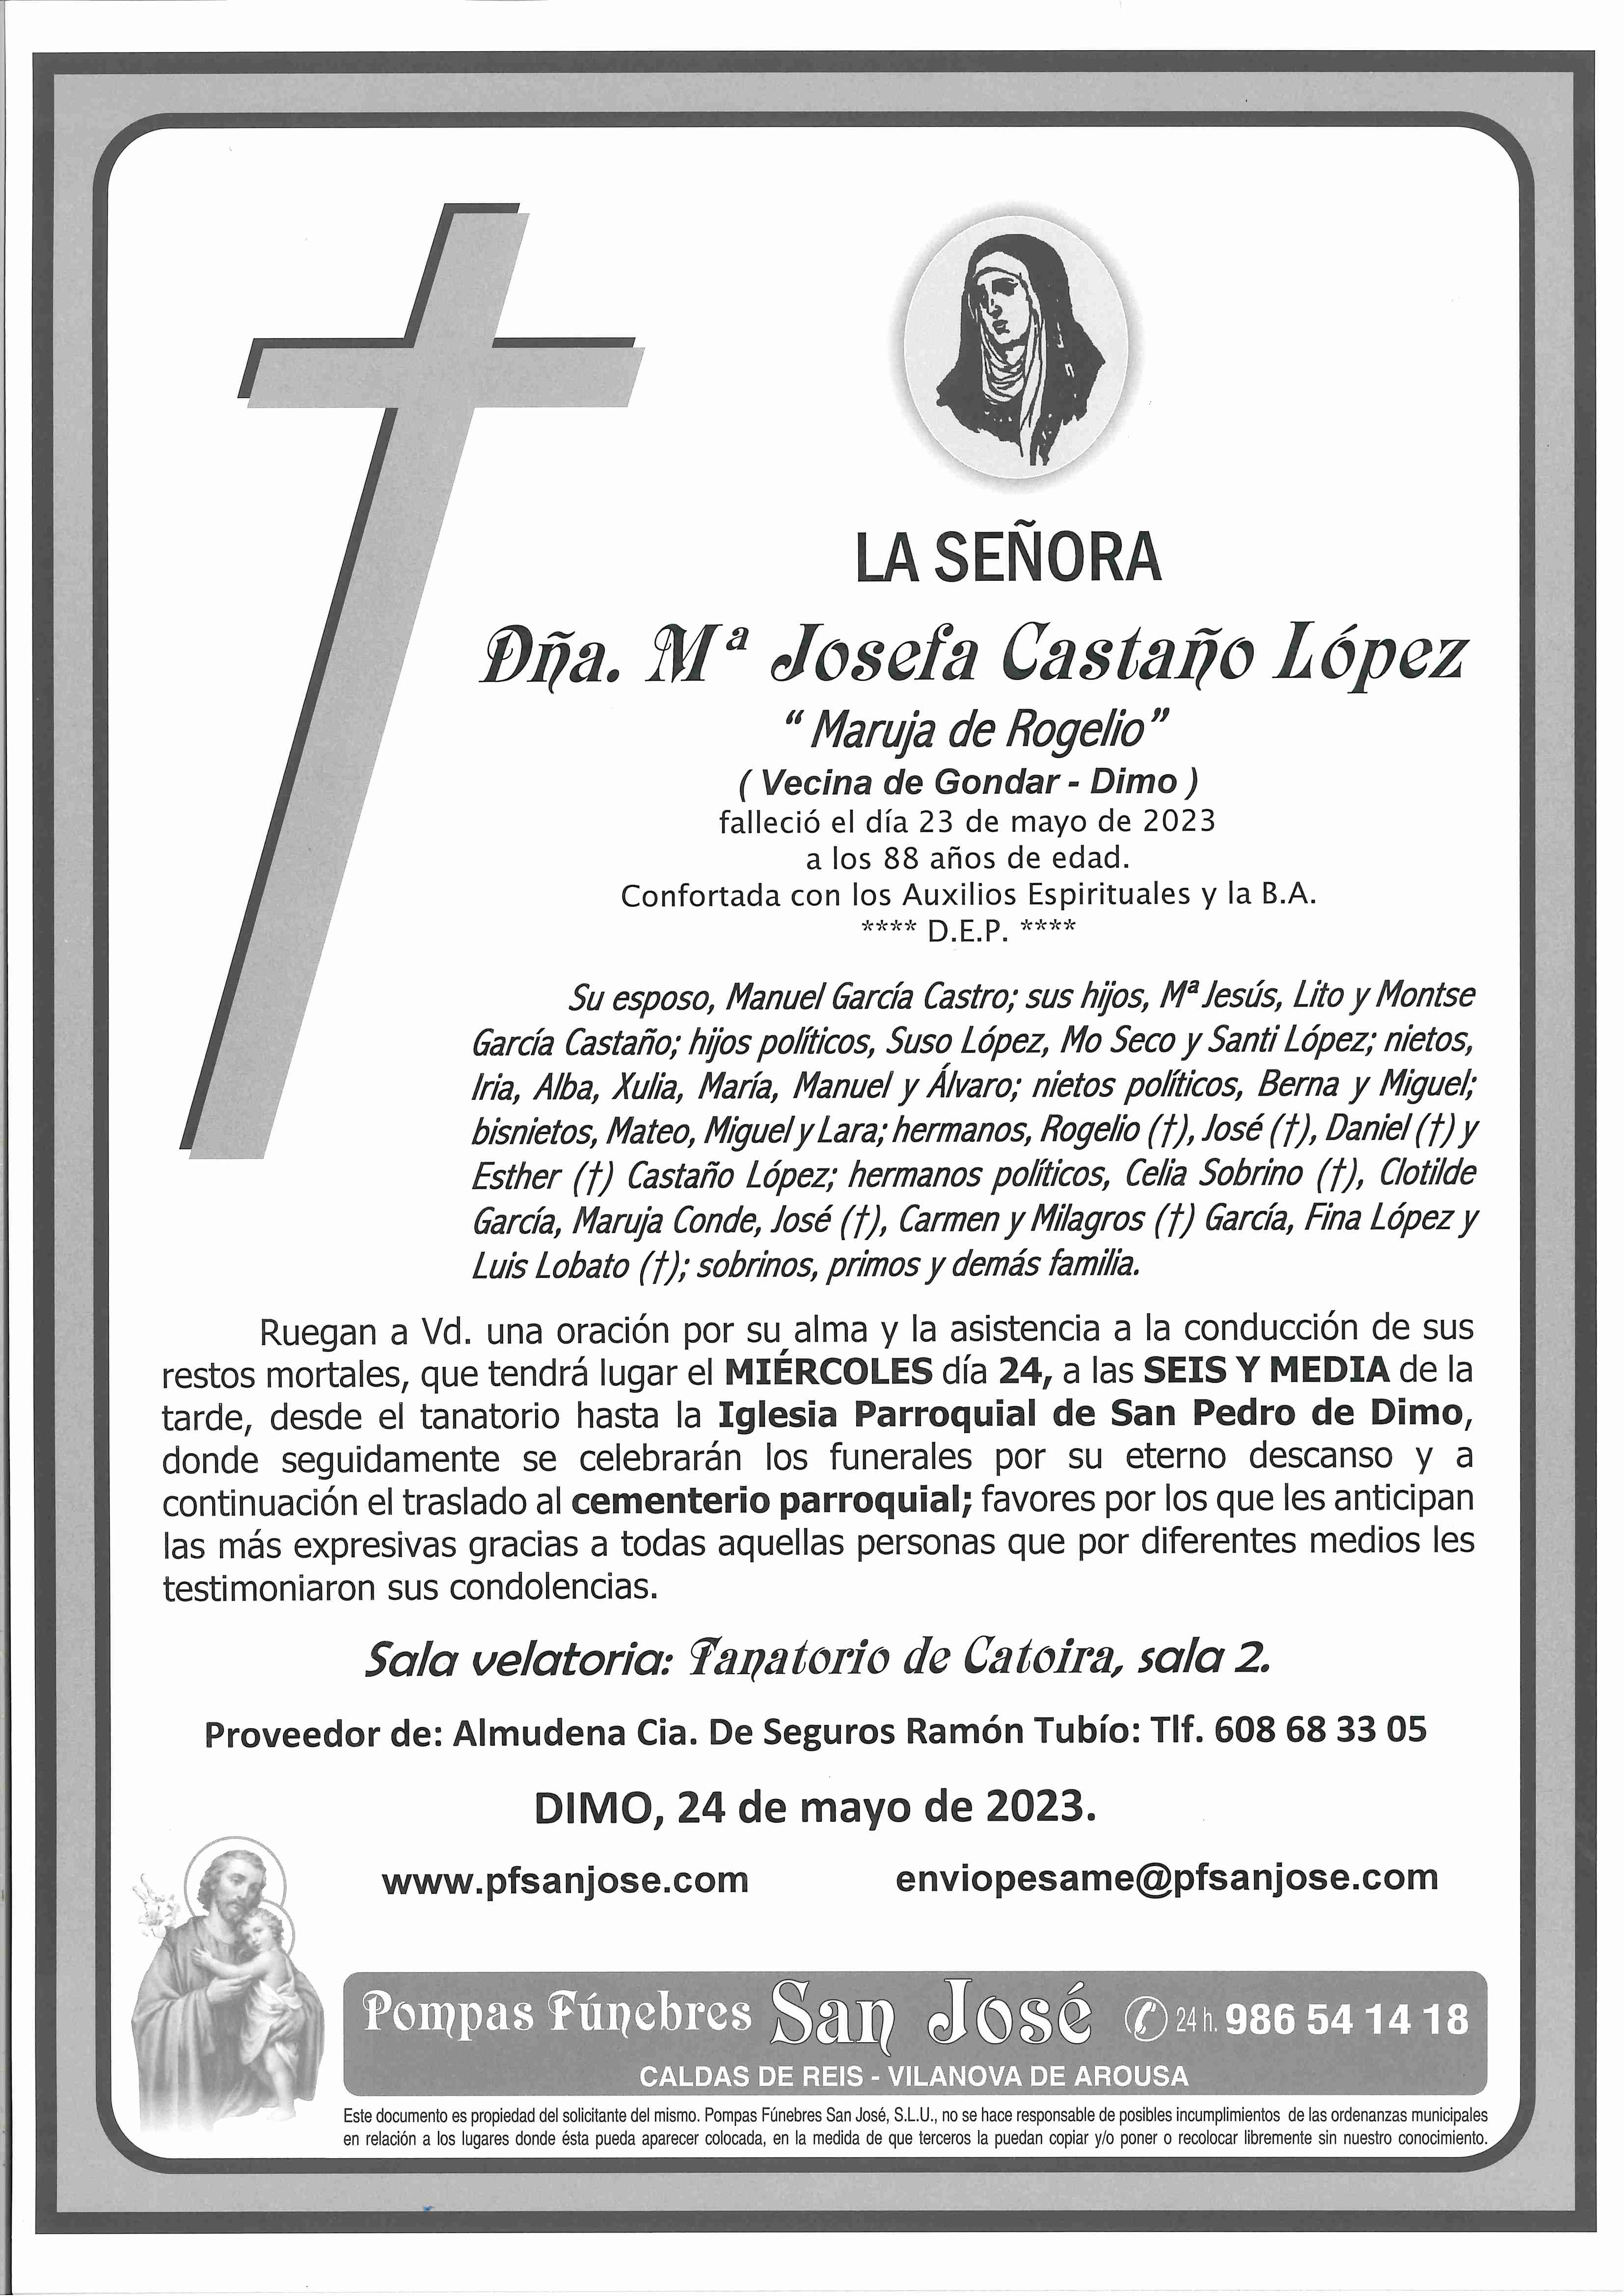 Mª Josefa Castaño López